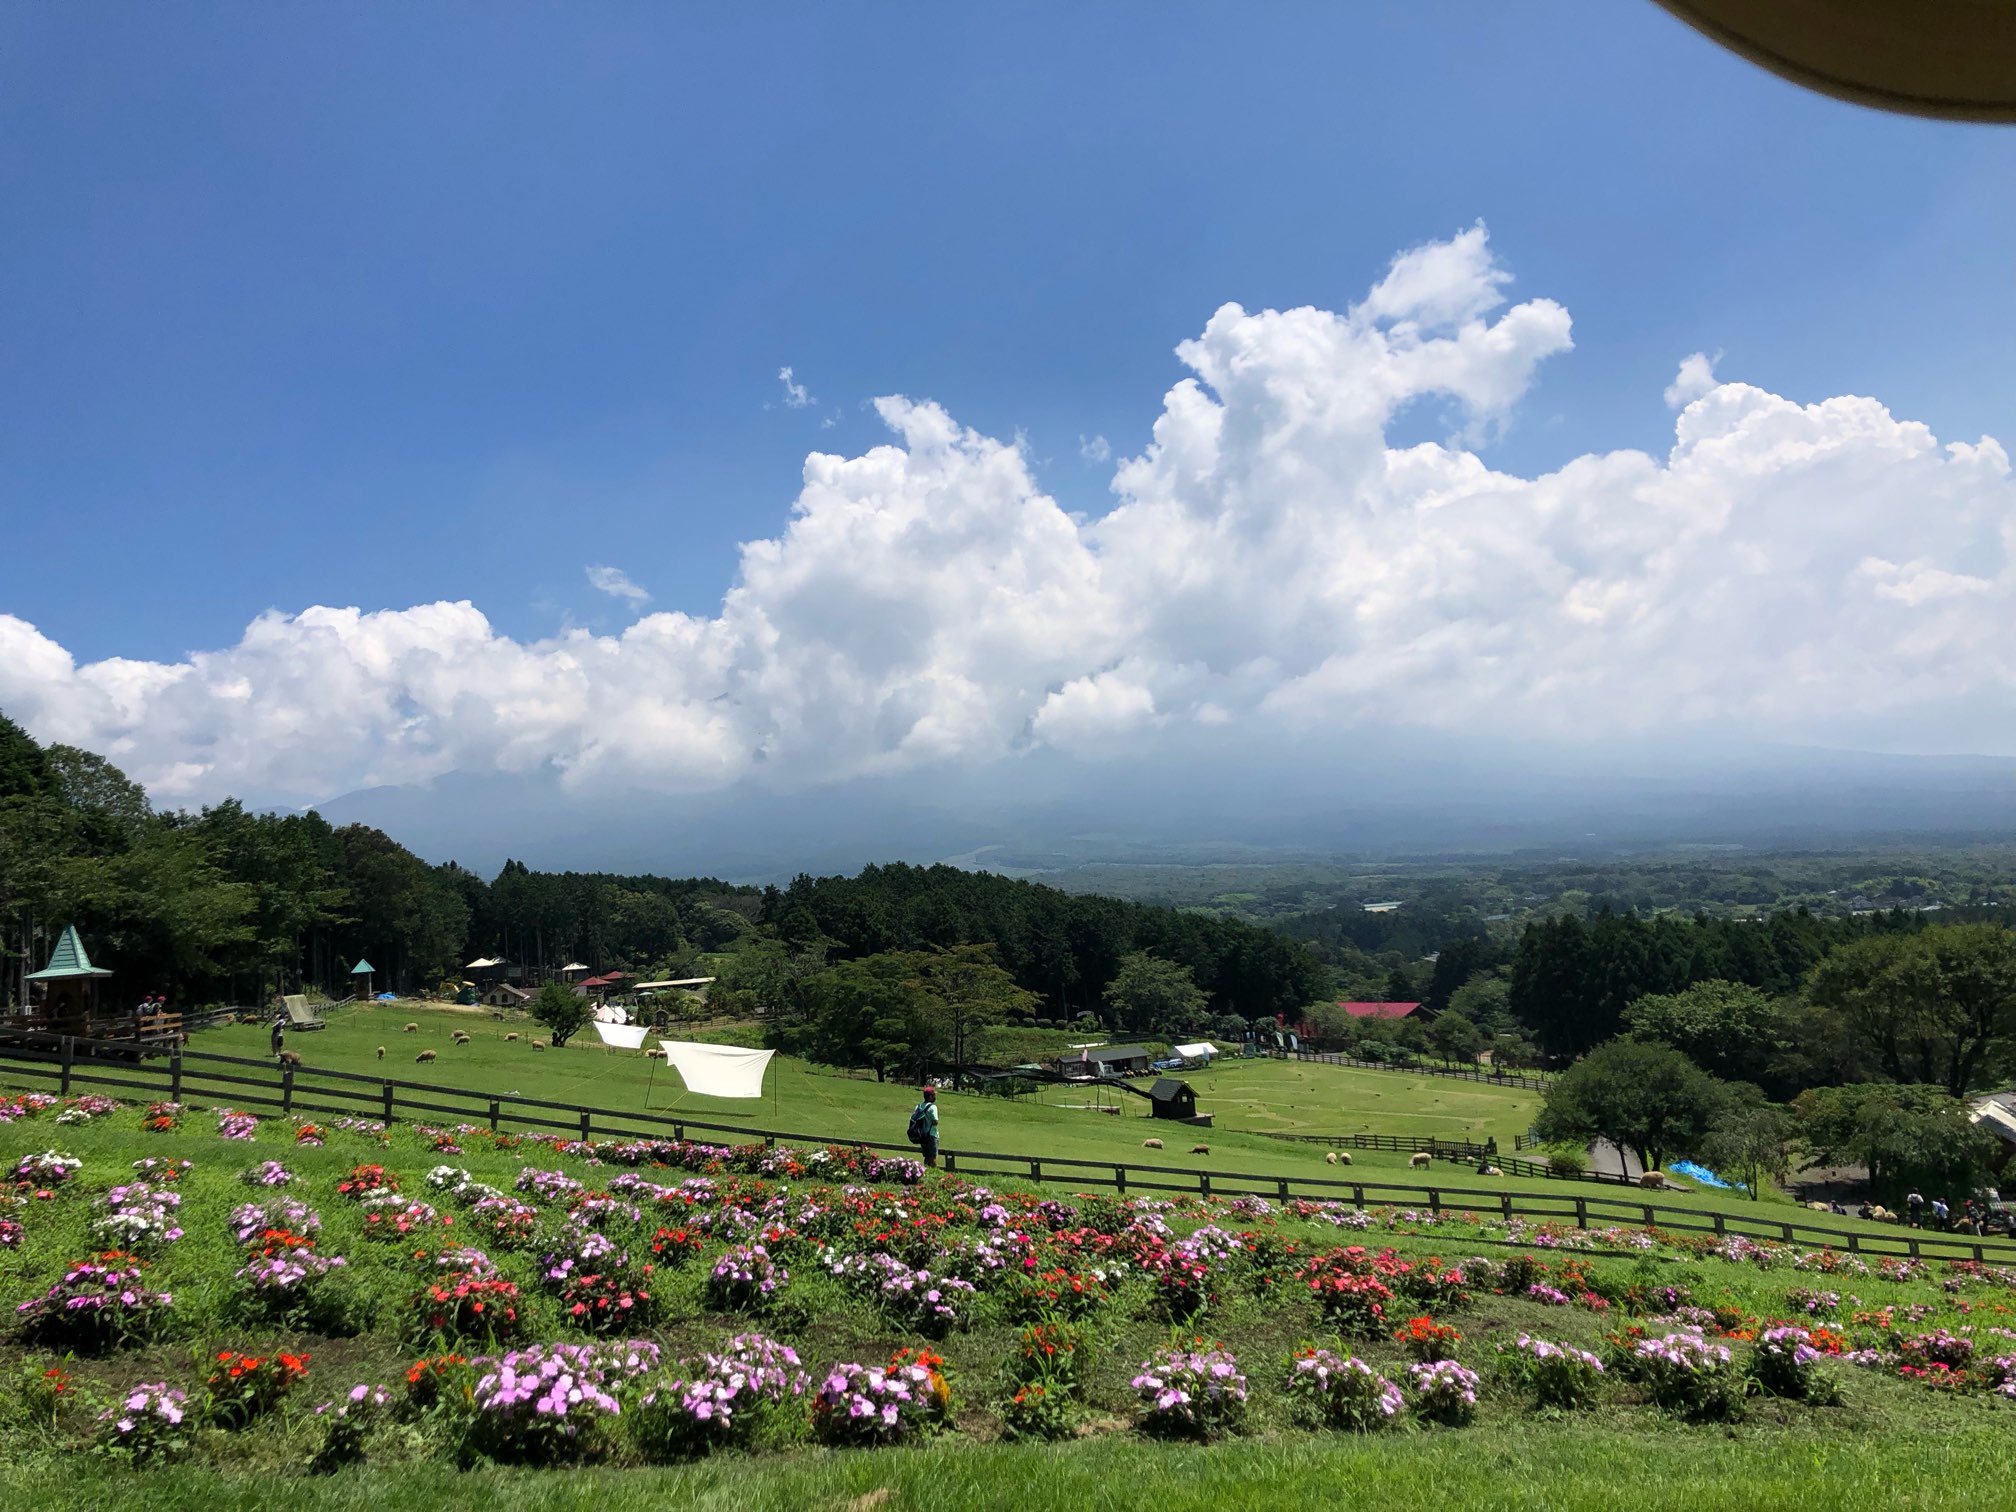 夏休み 新しいもの がいろいろ始まり 怒涛の写真枚数でお届けしますｗ 日本一富士山の絶景を望める静岡の牧場 まかいの牧場へようこそ